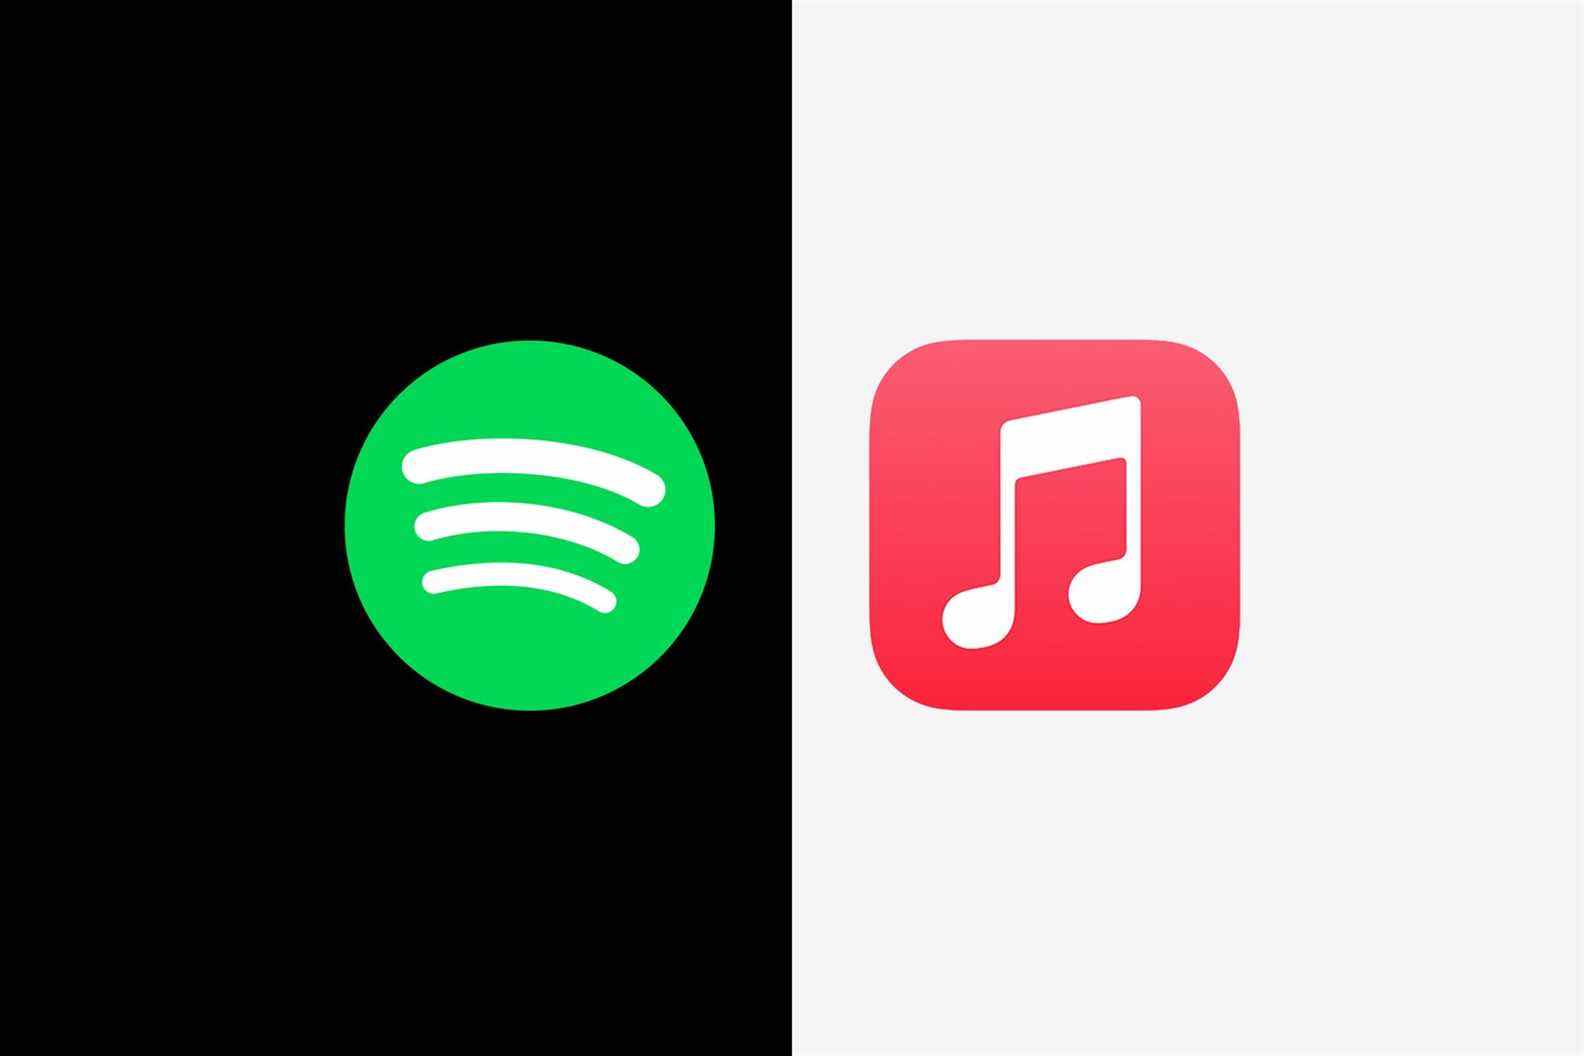 icônes de musique spotify et apple